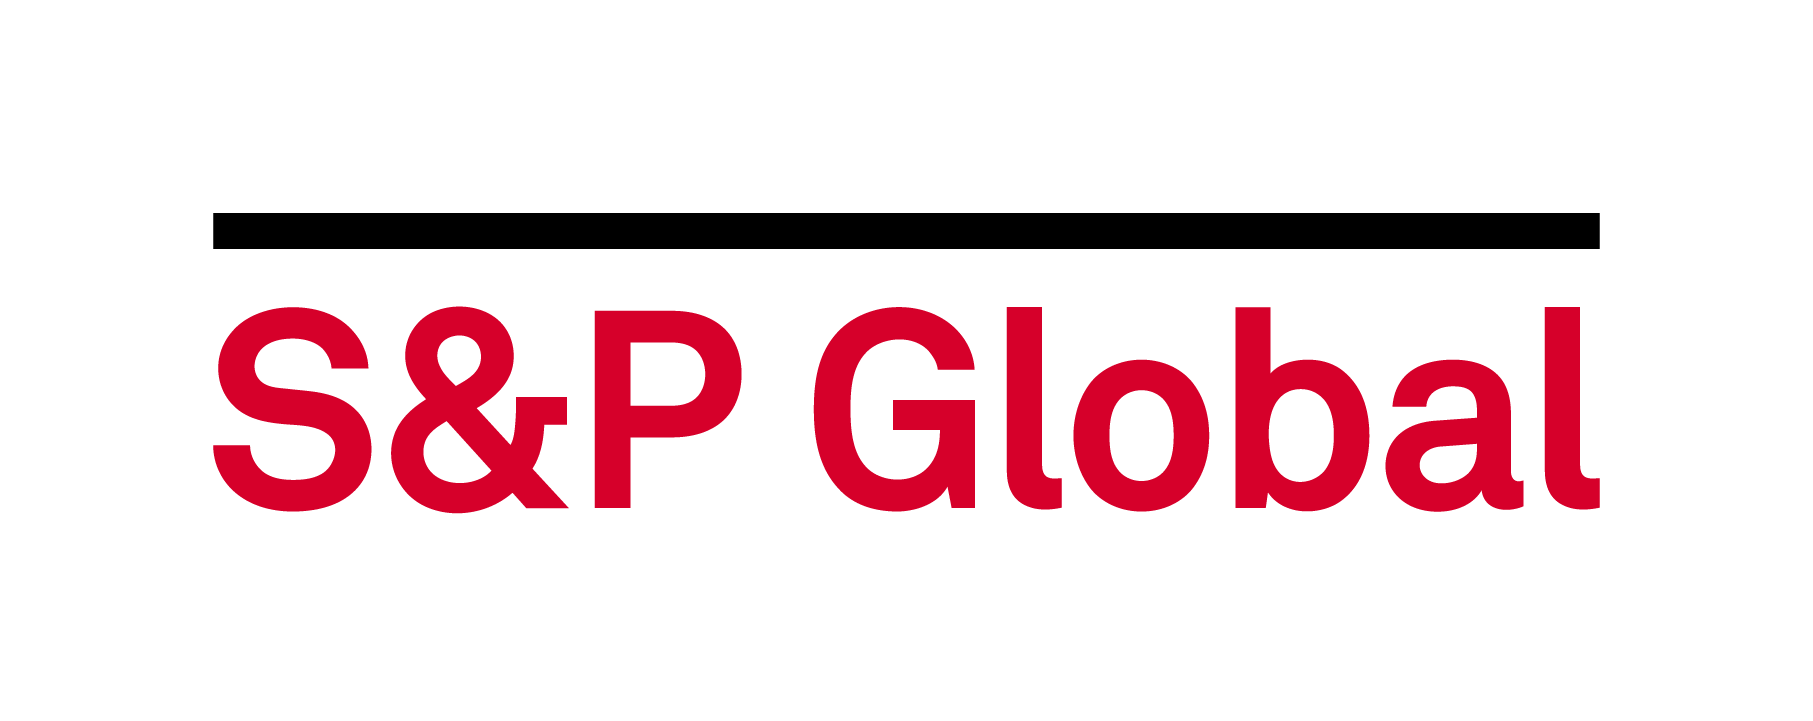 S p россии. S&P Global. S&P Global Platts. S&P логотип. Standard poor's логотип.